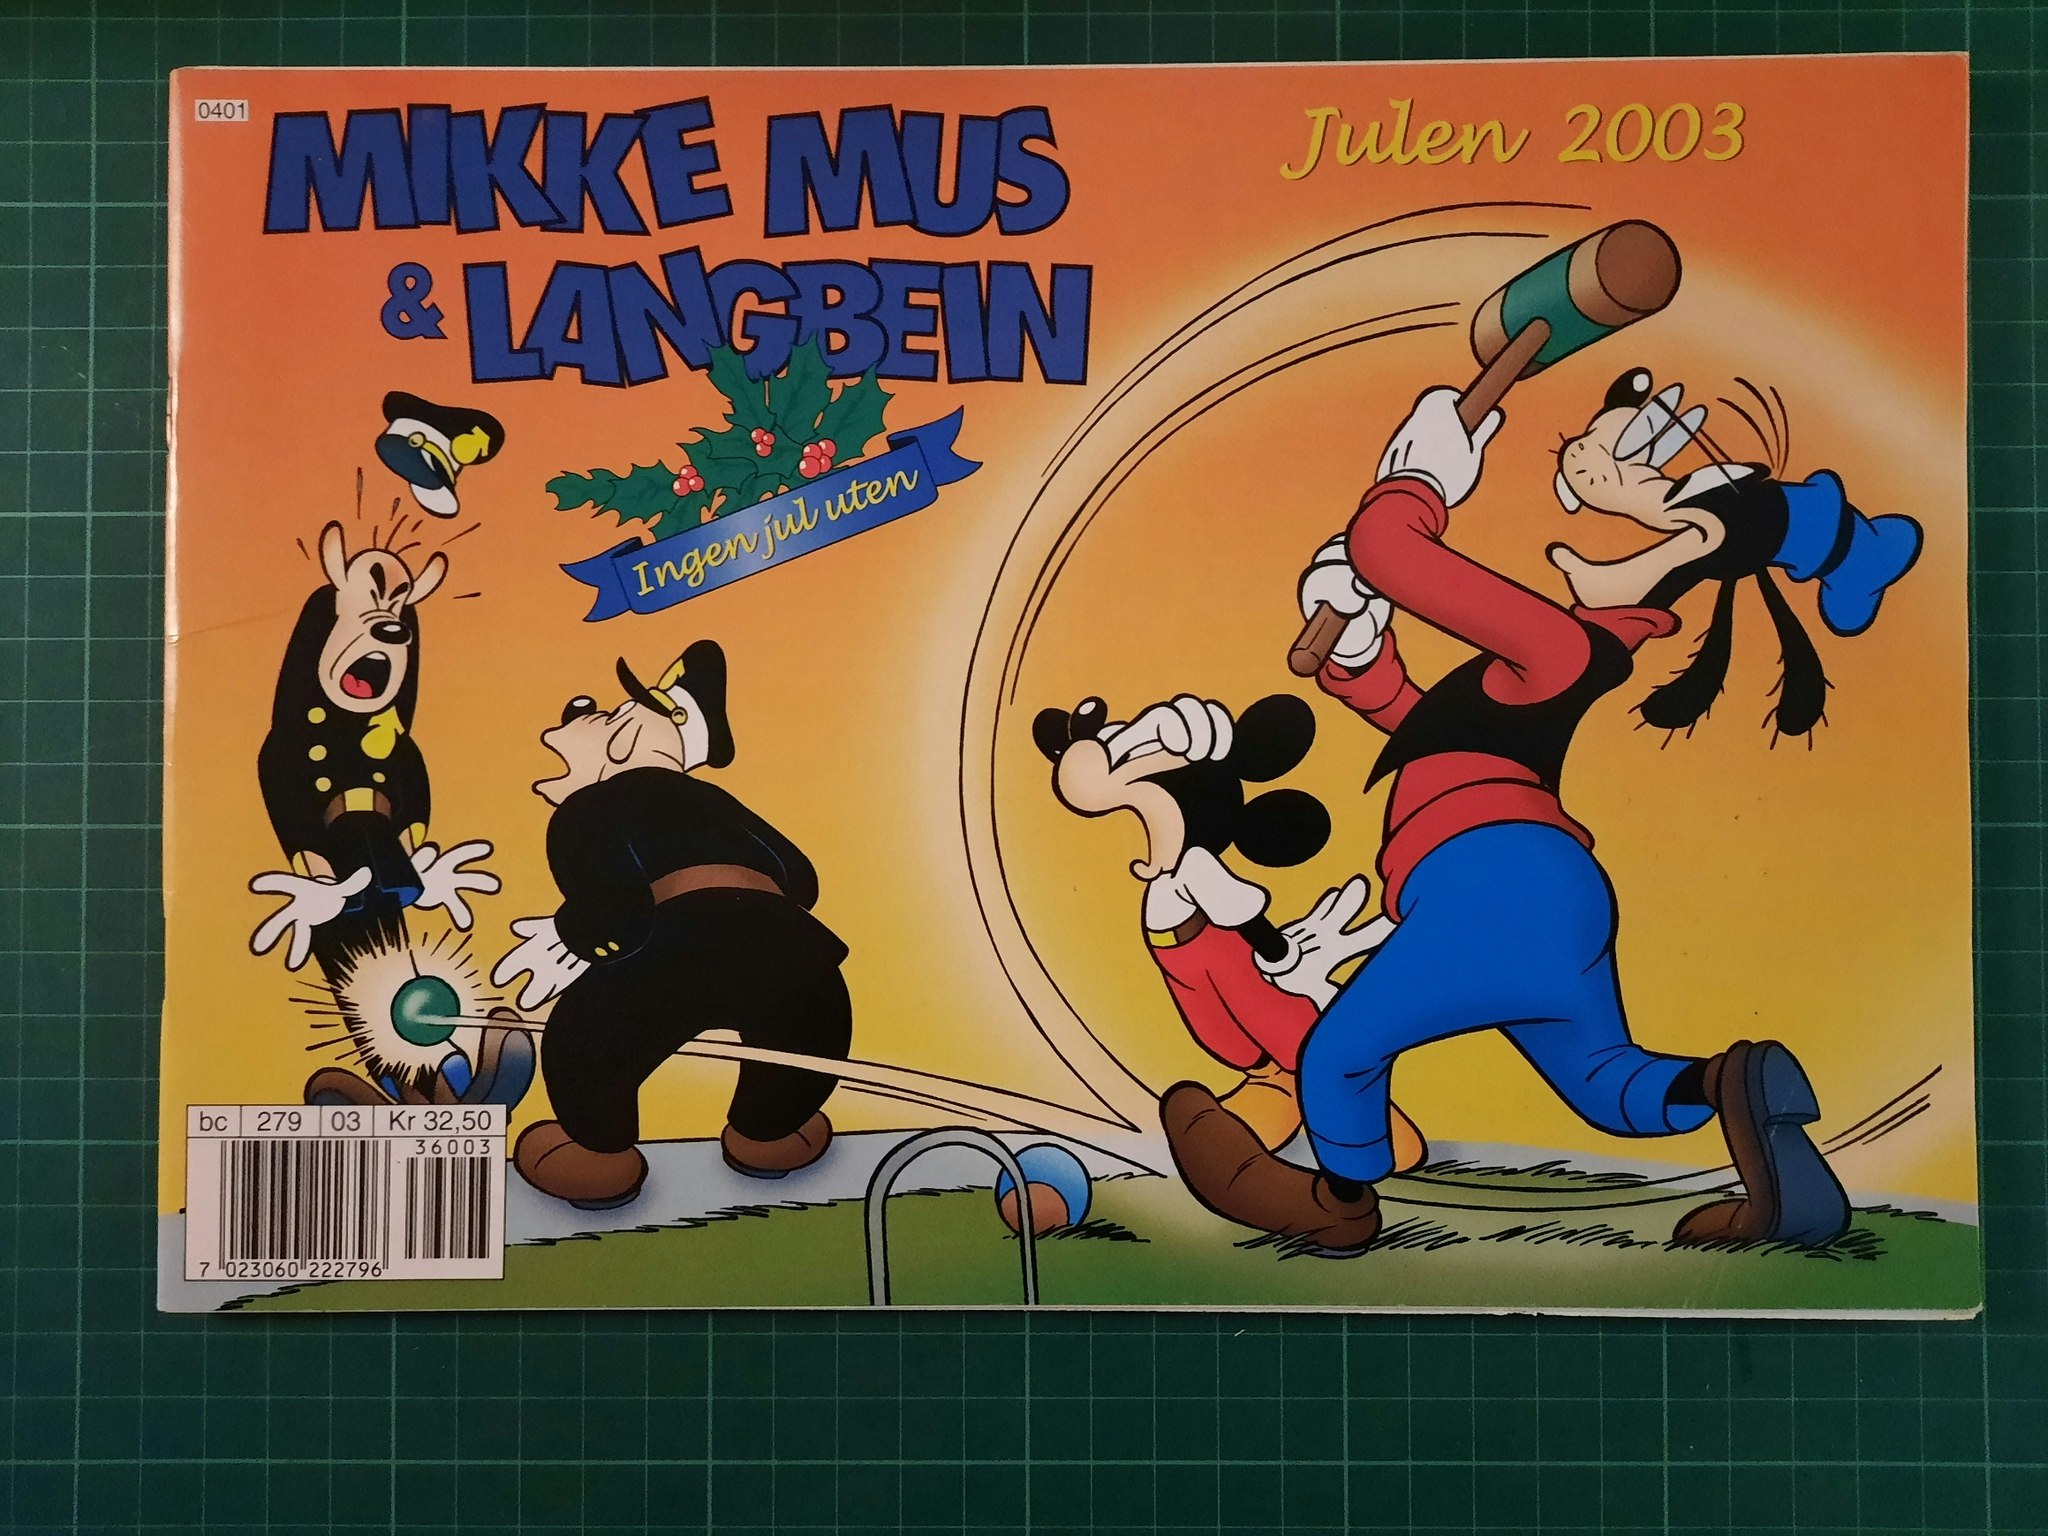 Mikke Mus & Langbein 2003